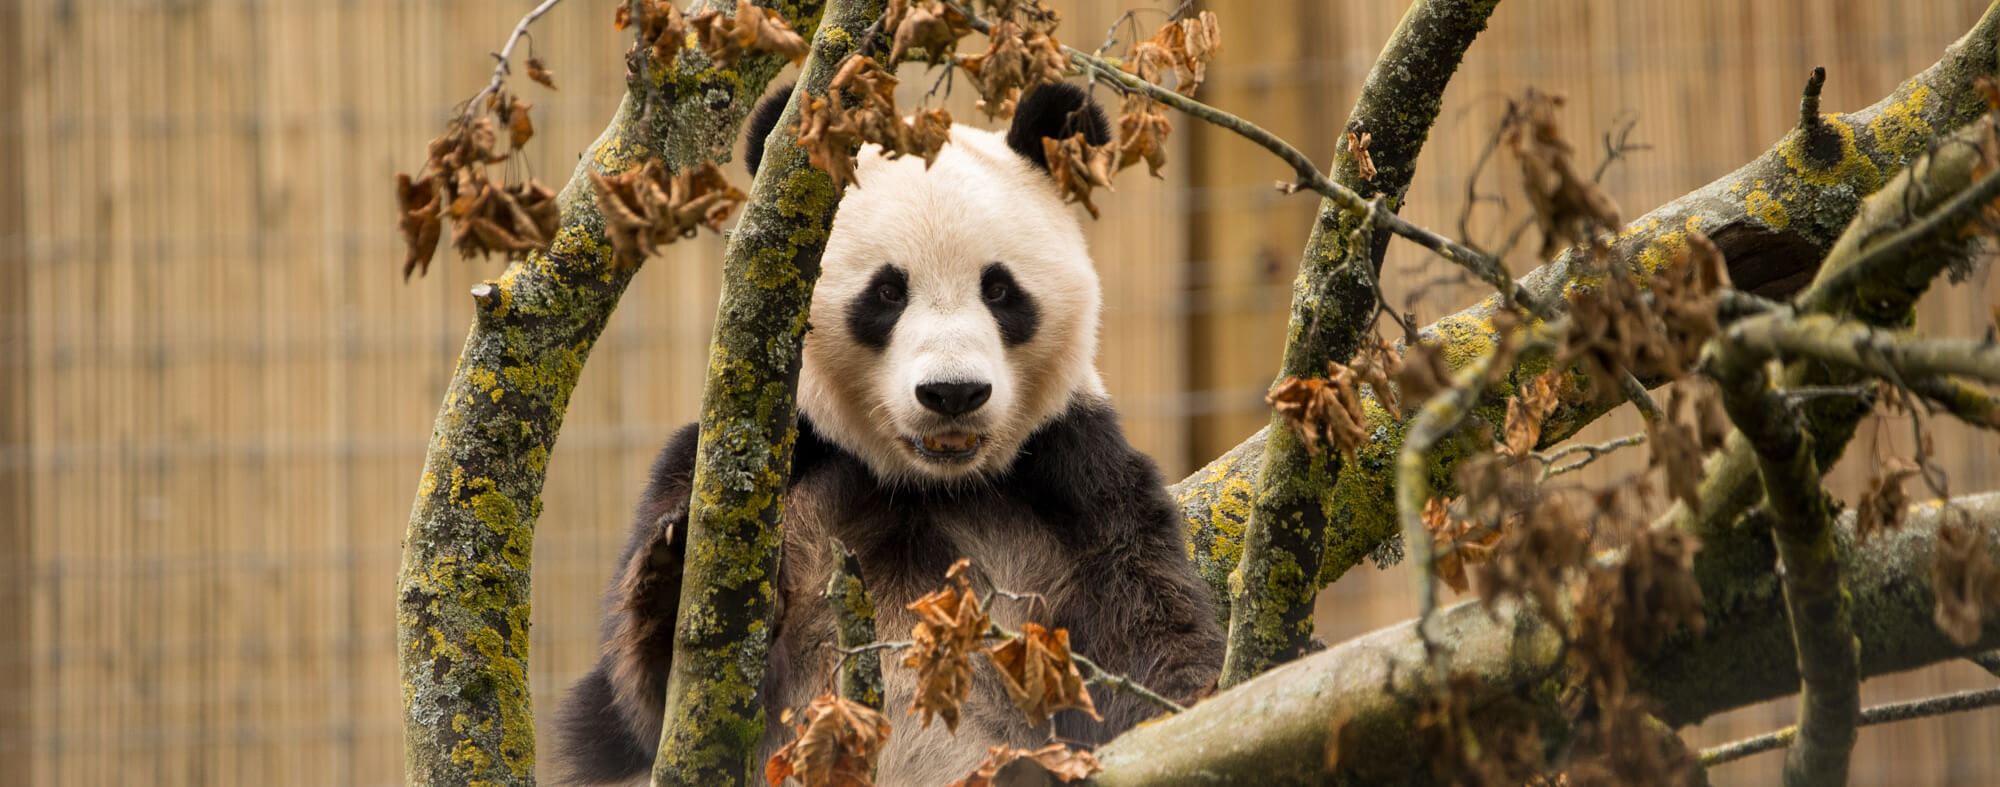 A panda sat in a tree